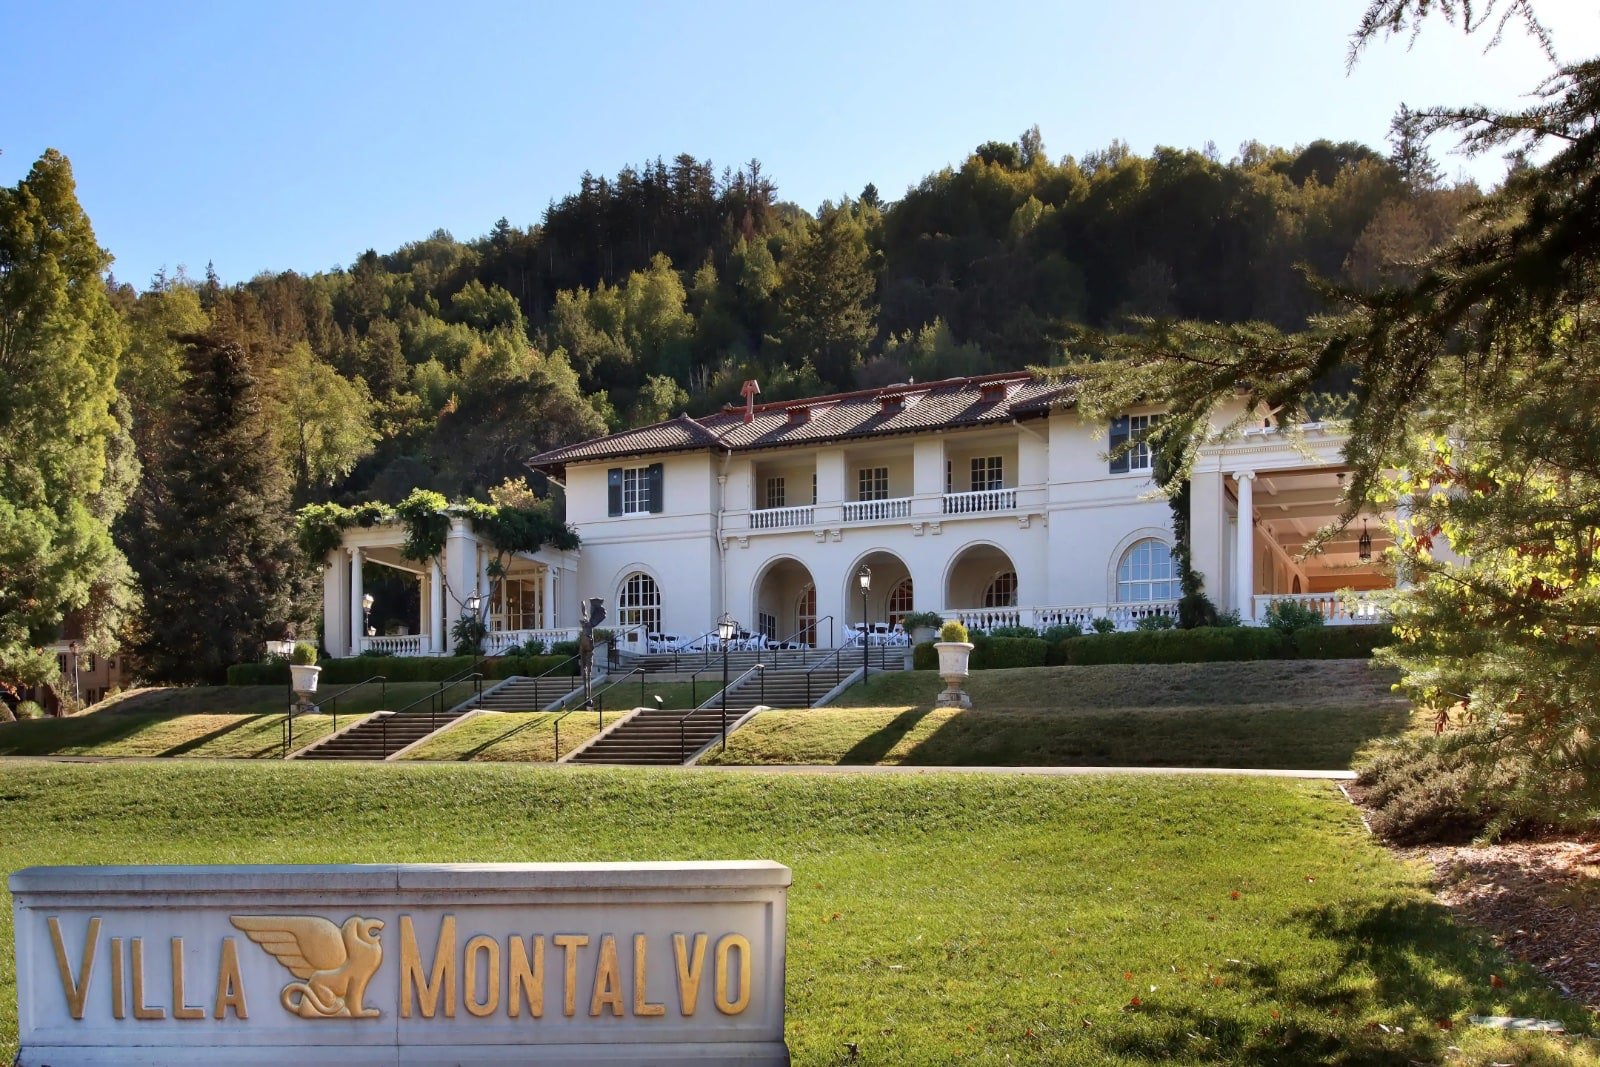 Villa Montalvo in Saratoga